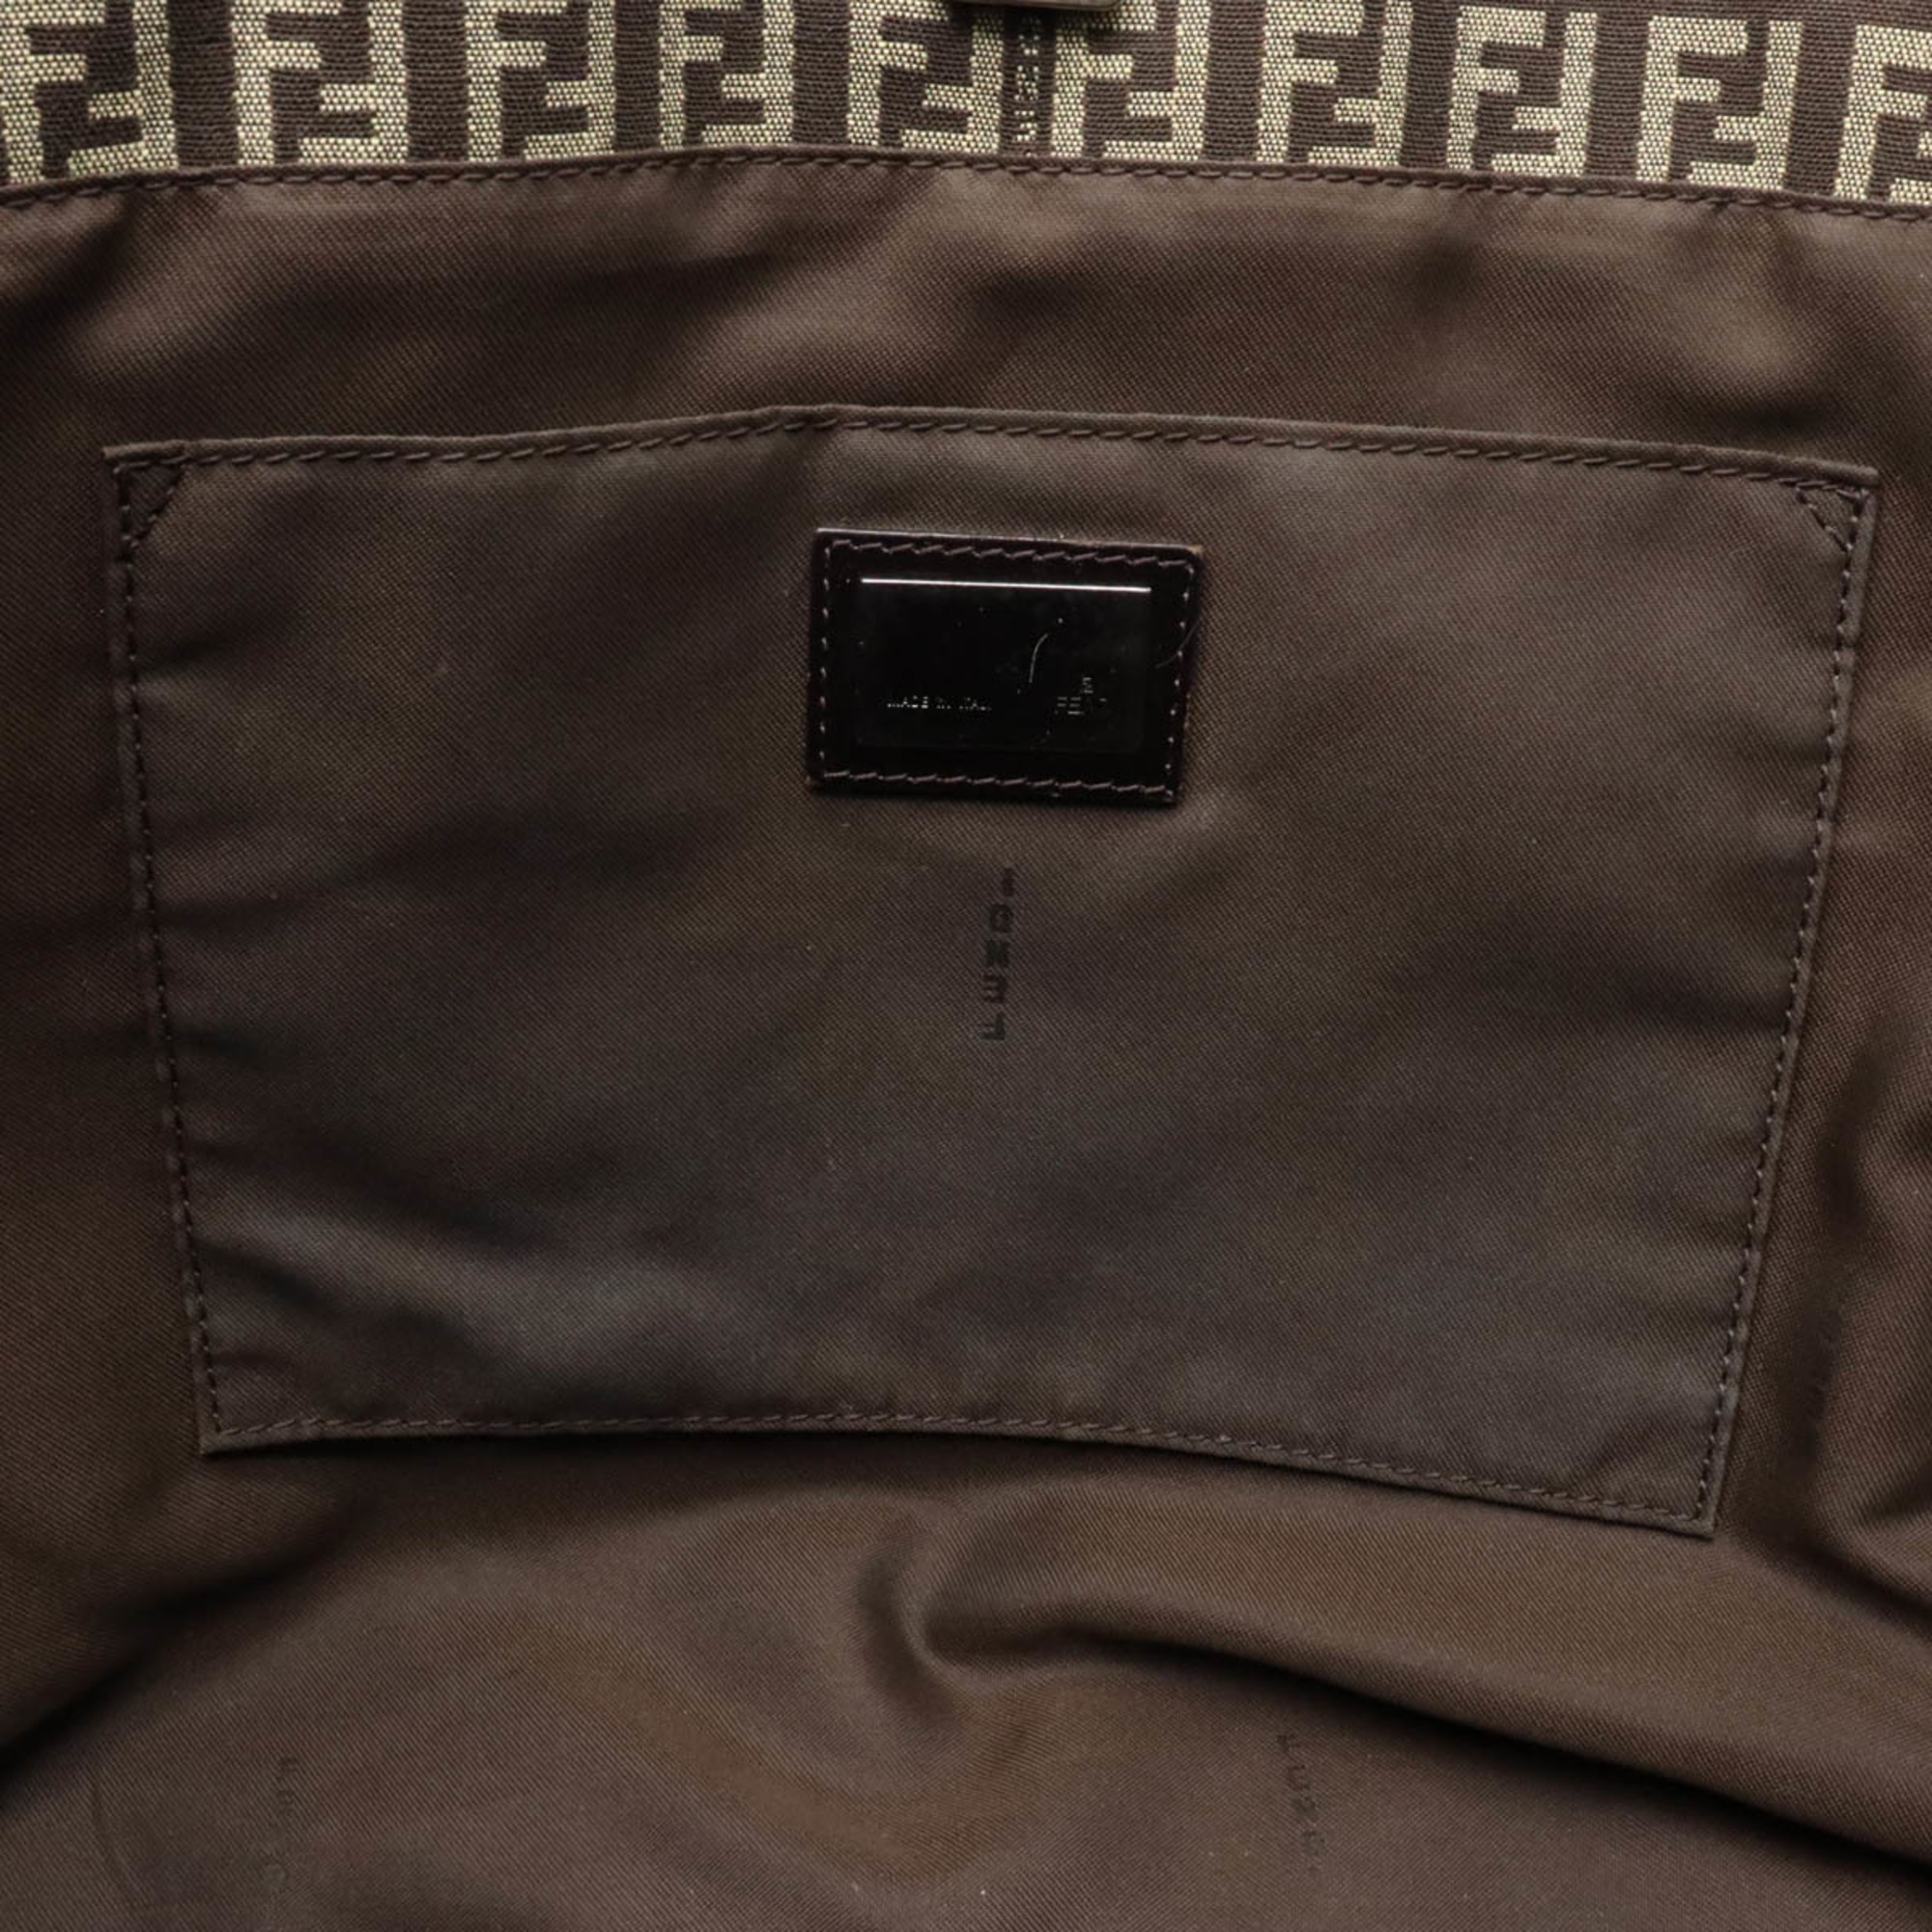 FENDI Zucchino Zucca pattern tote bag shoulder canvas leather dark brown beige 8BH104